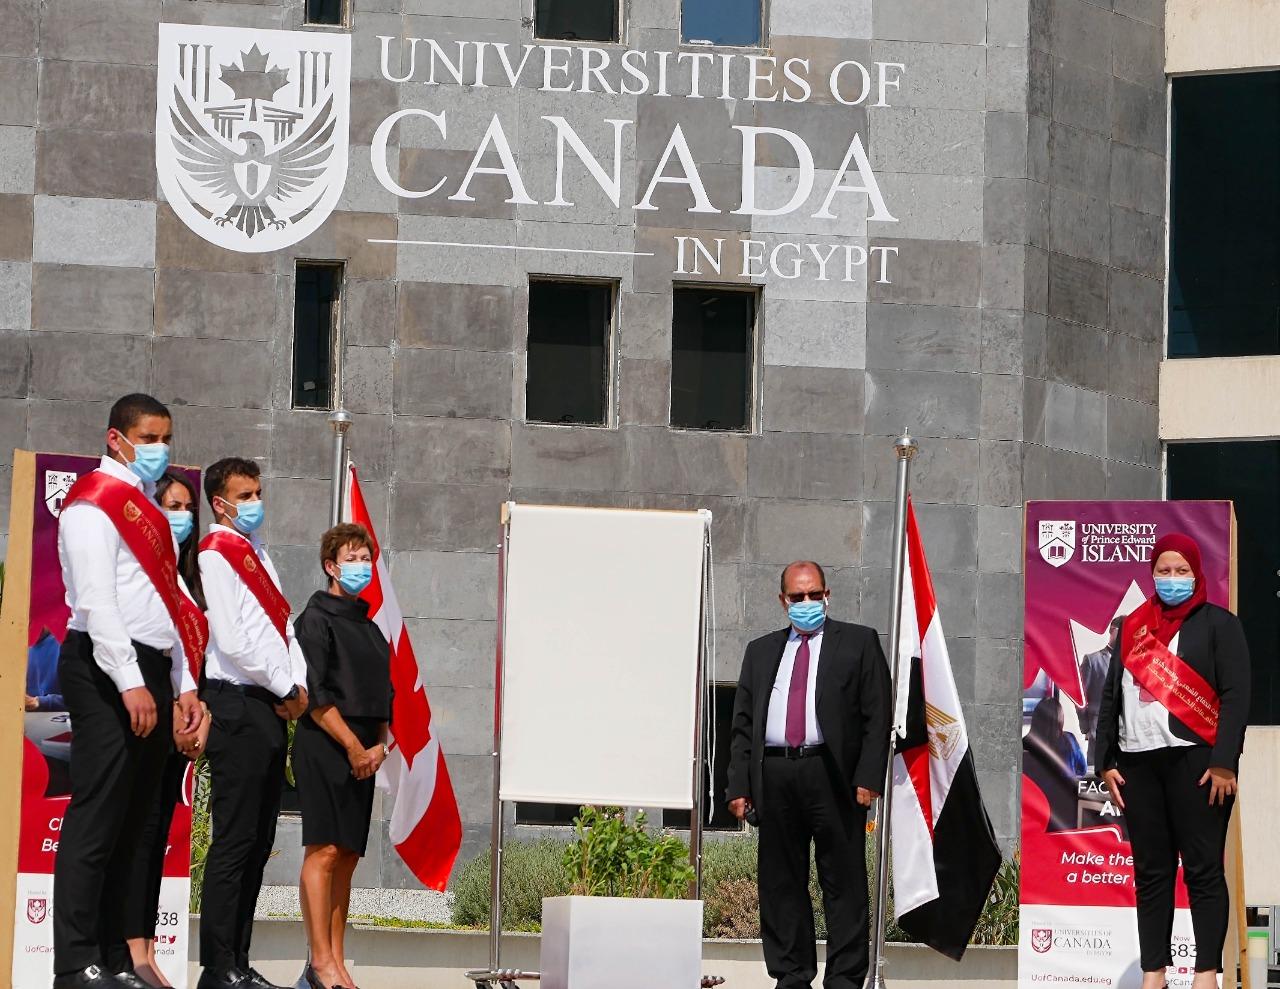   الرئيس السيسي يشهد الافتتاح الرئاسي للجامعات الكندية في مصر بالعاصمة الإدارية الجديدة